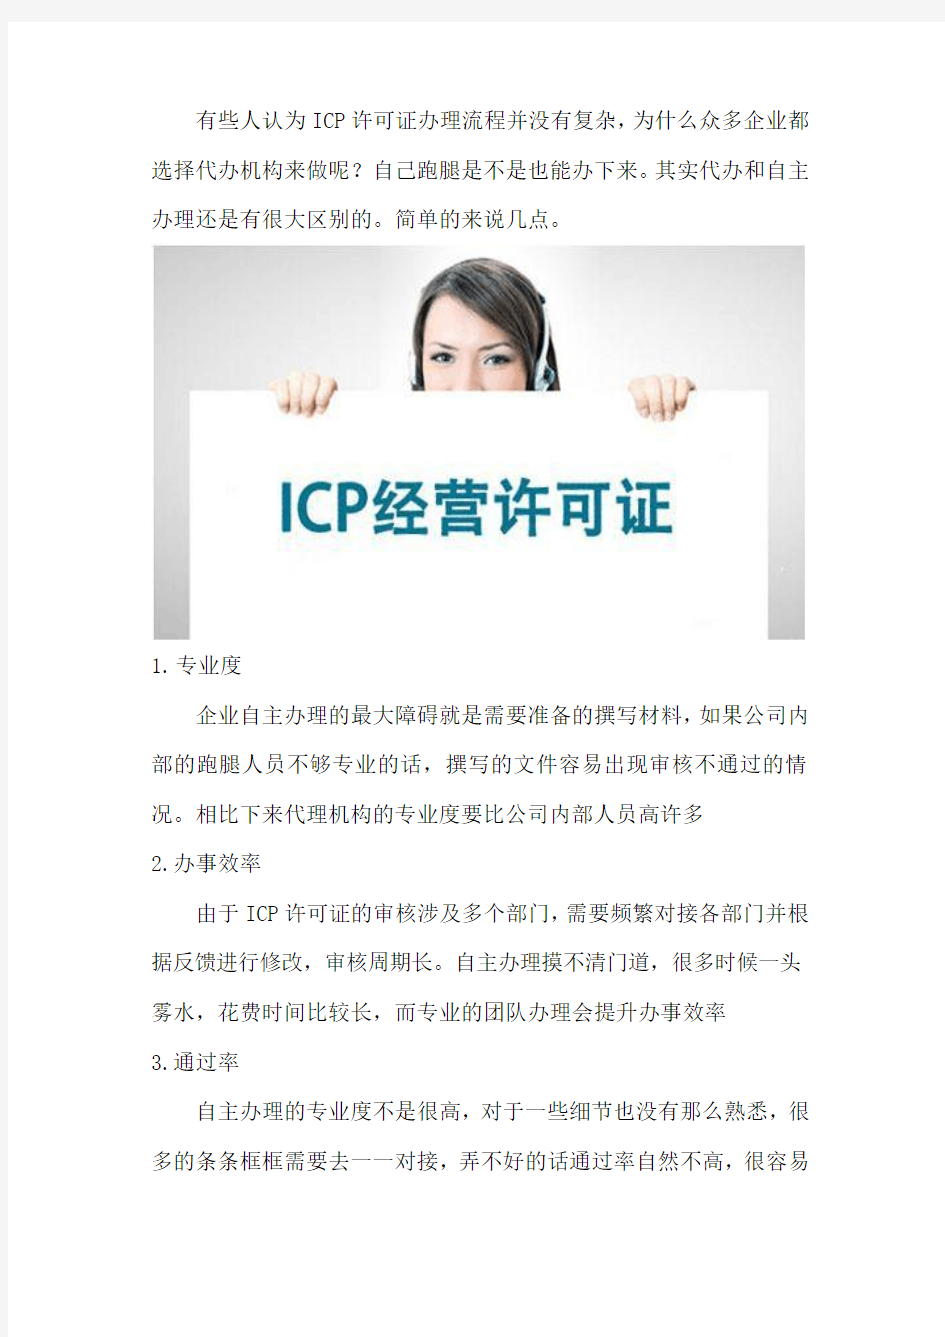 快速办理ICP许可证